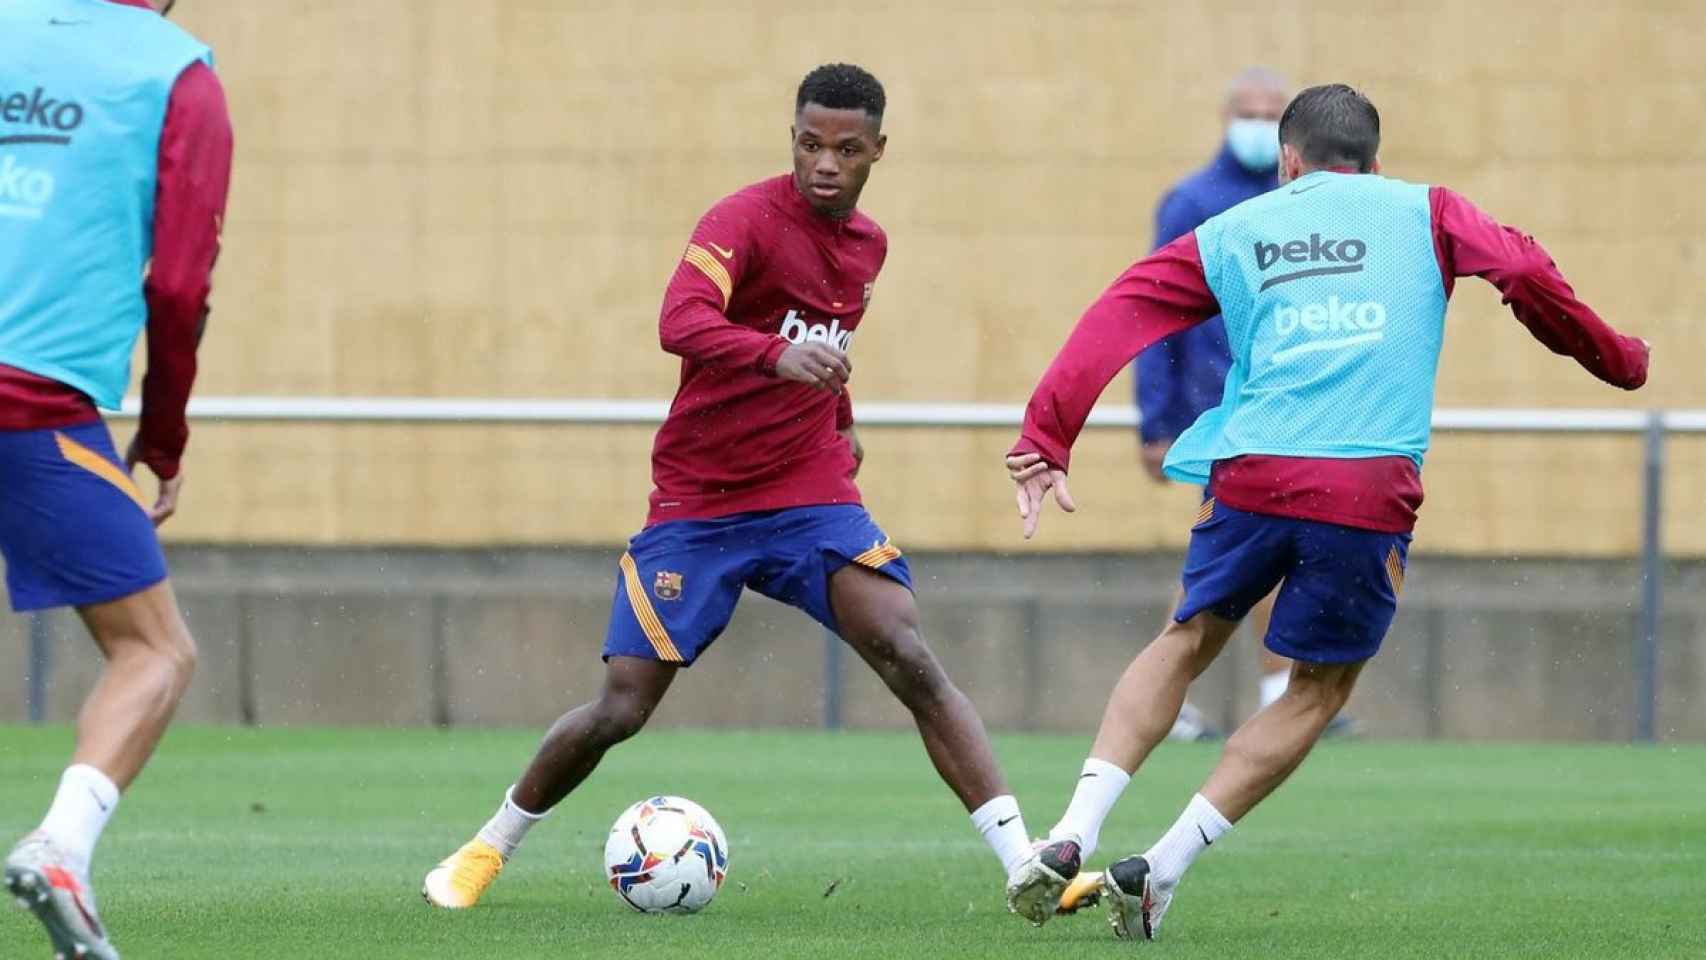 Ansu Fati en un entrenamiento del Barça durante la pretemporada / FC Barcelona